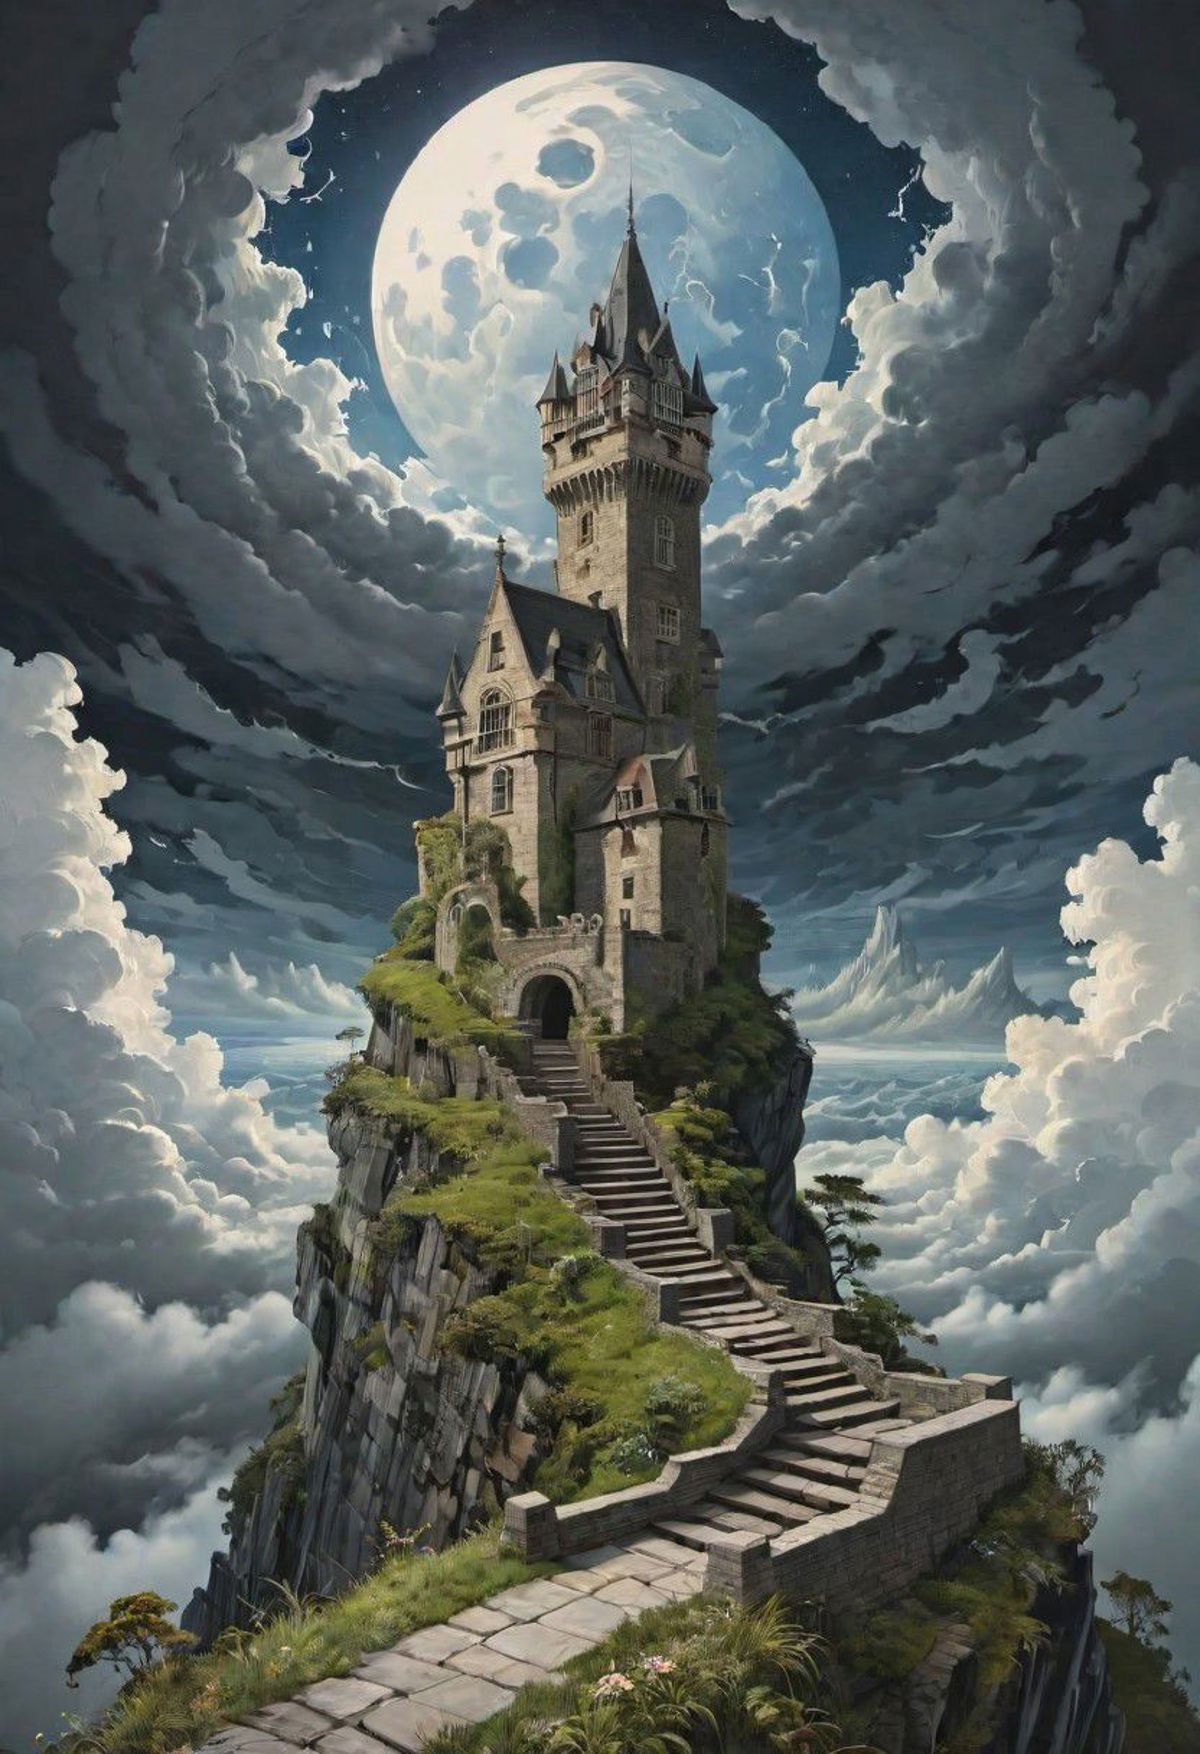 Escher Blend image by Ajuro